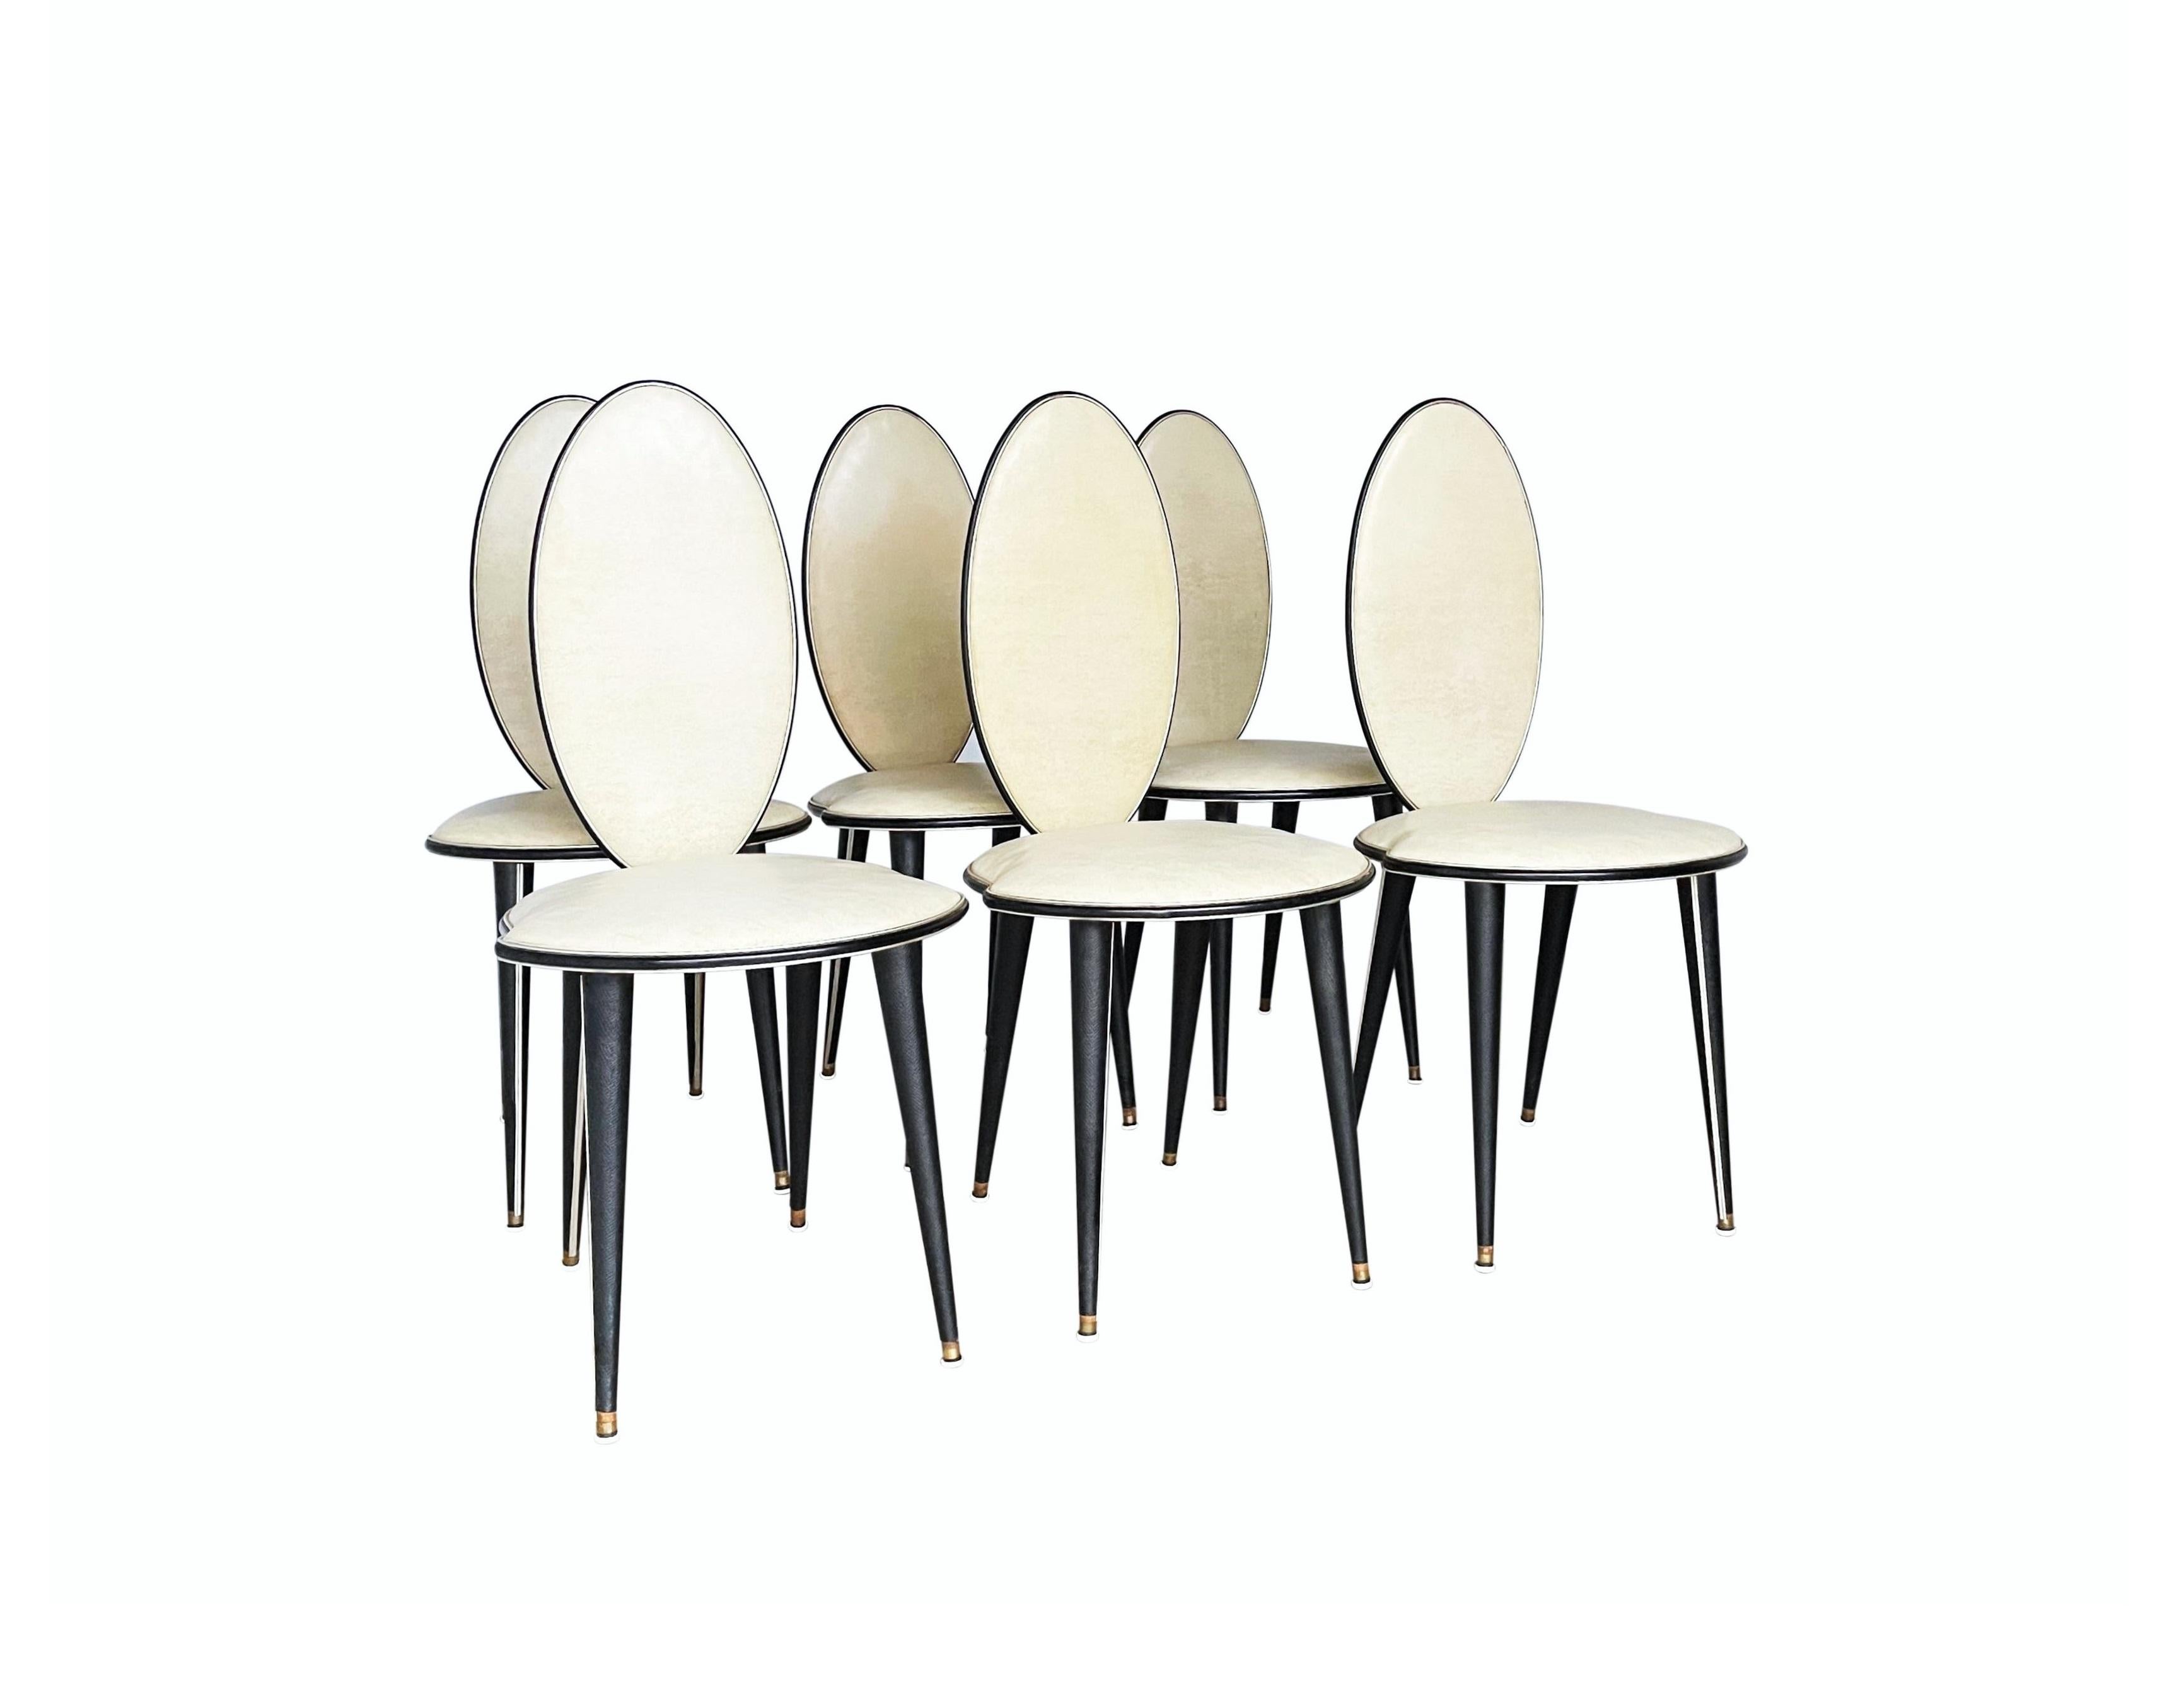 Ces chaises de salle à manger étonnantes et très inhabituelles ont été conçues par Umberto Mascagni de Bologne, en Italie, en 1952. I. Barget, Ltd, Londres (